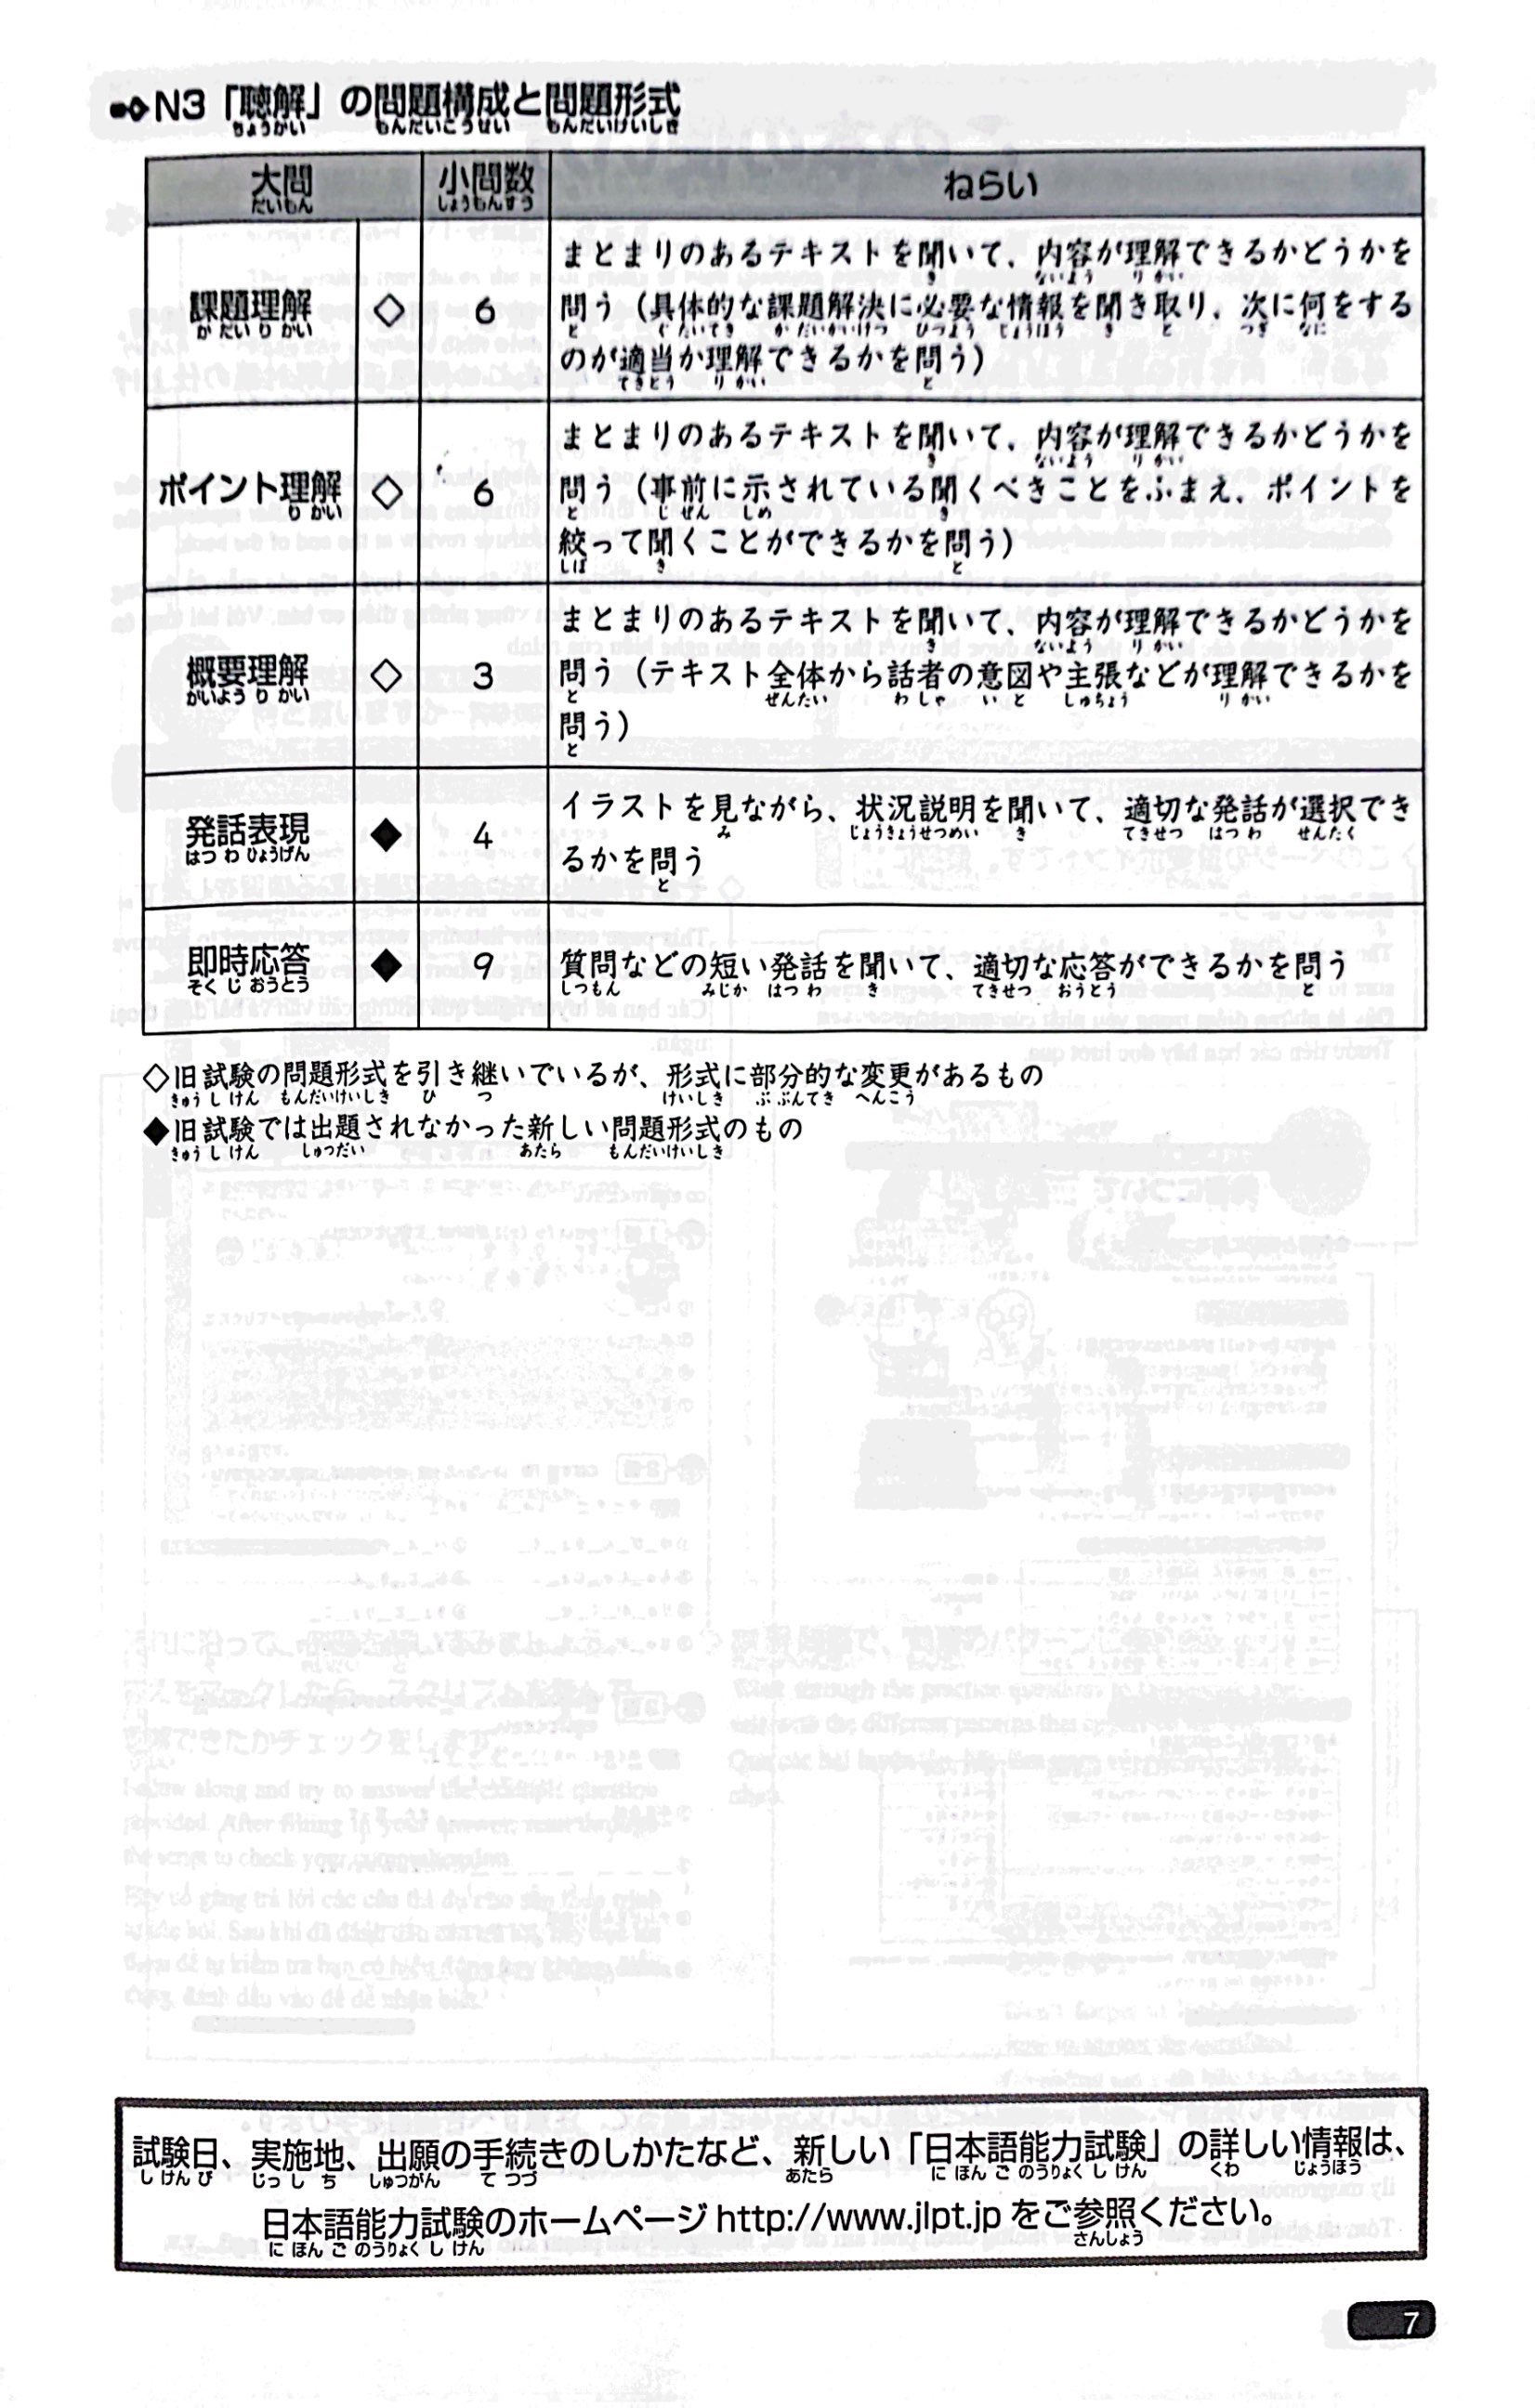 Luyện Thi Năng Lực Nhật Ngữ N3 - Nghe Hiểu PDF